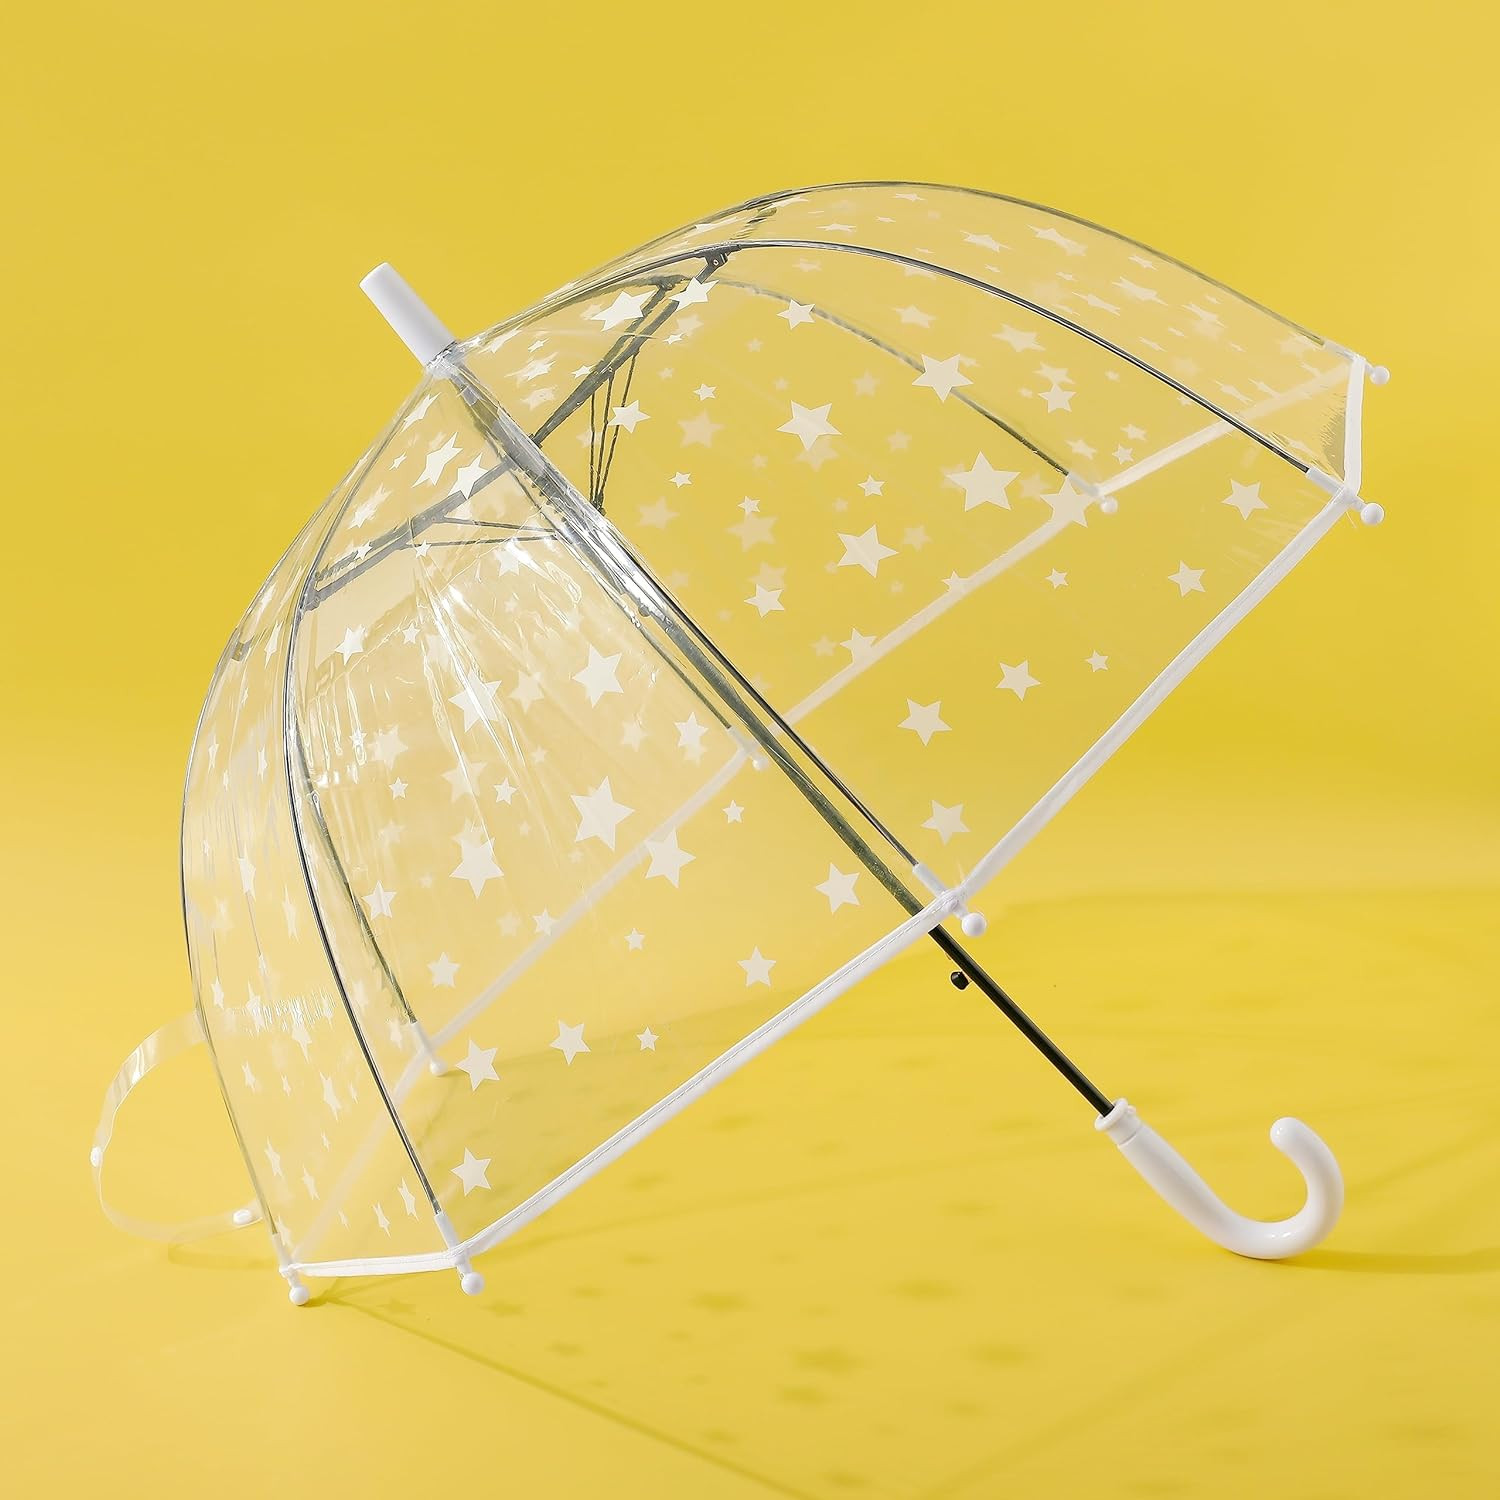 Kuber Industries Transparent Umbrella For Men & Women|Automatic Umbrella For Rain (White)